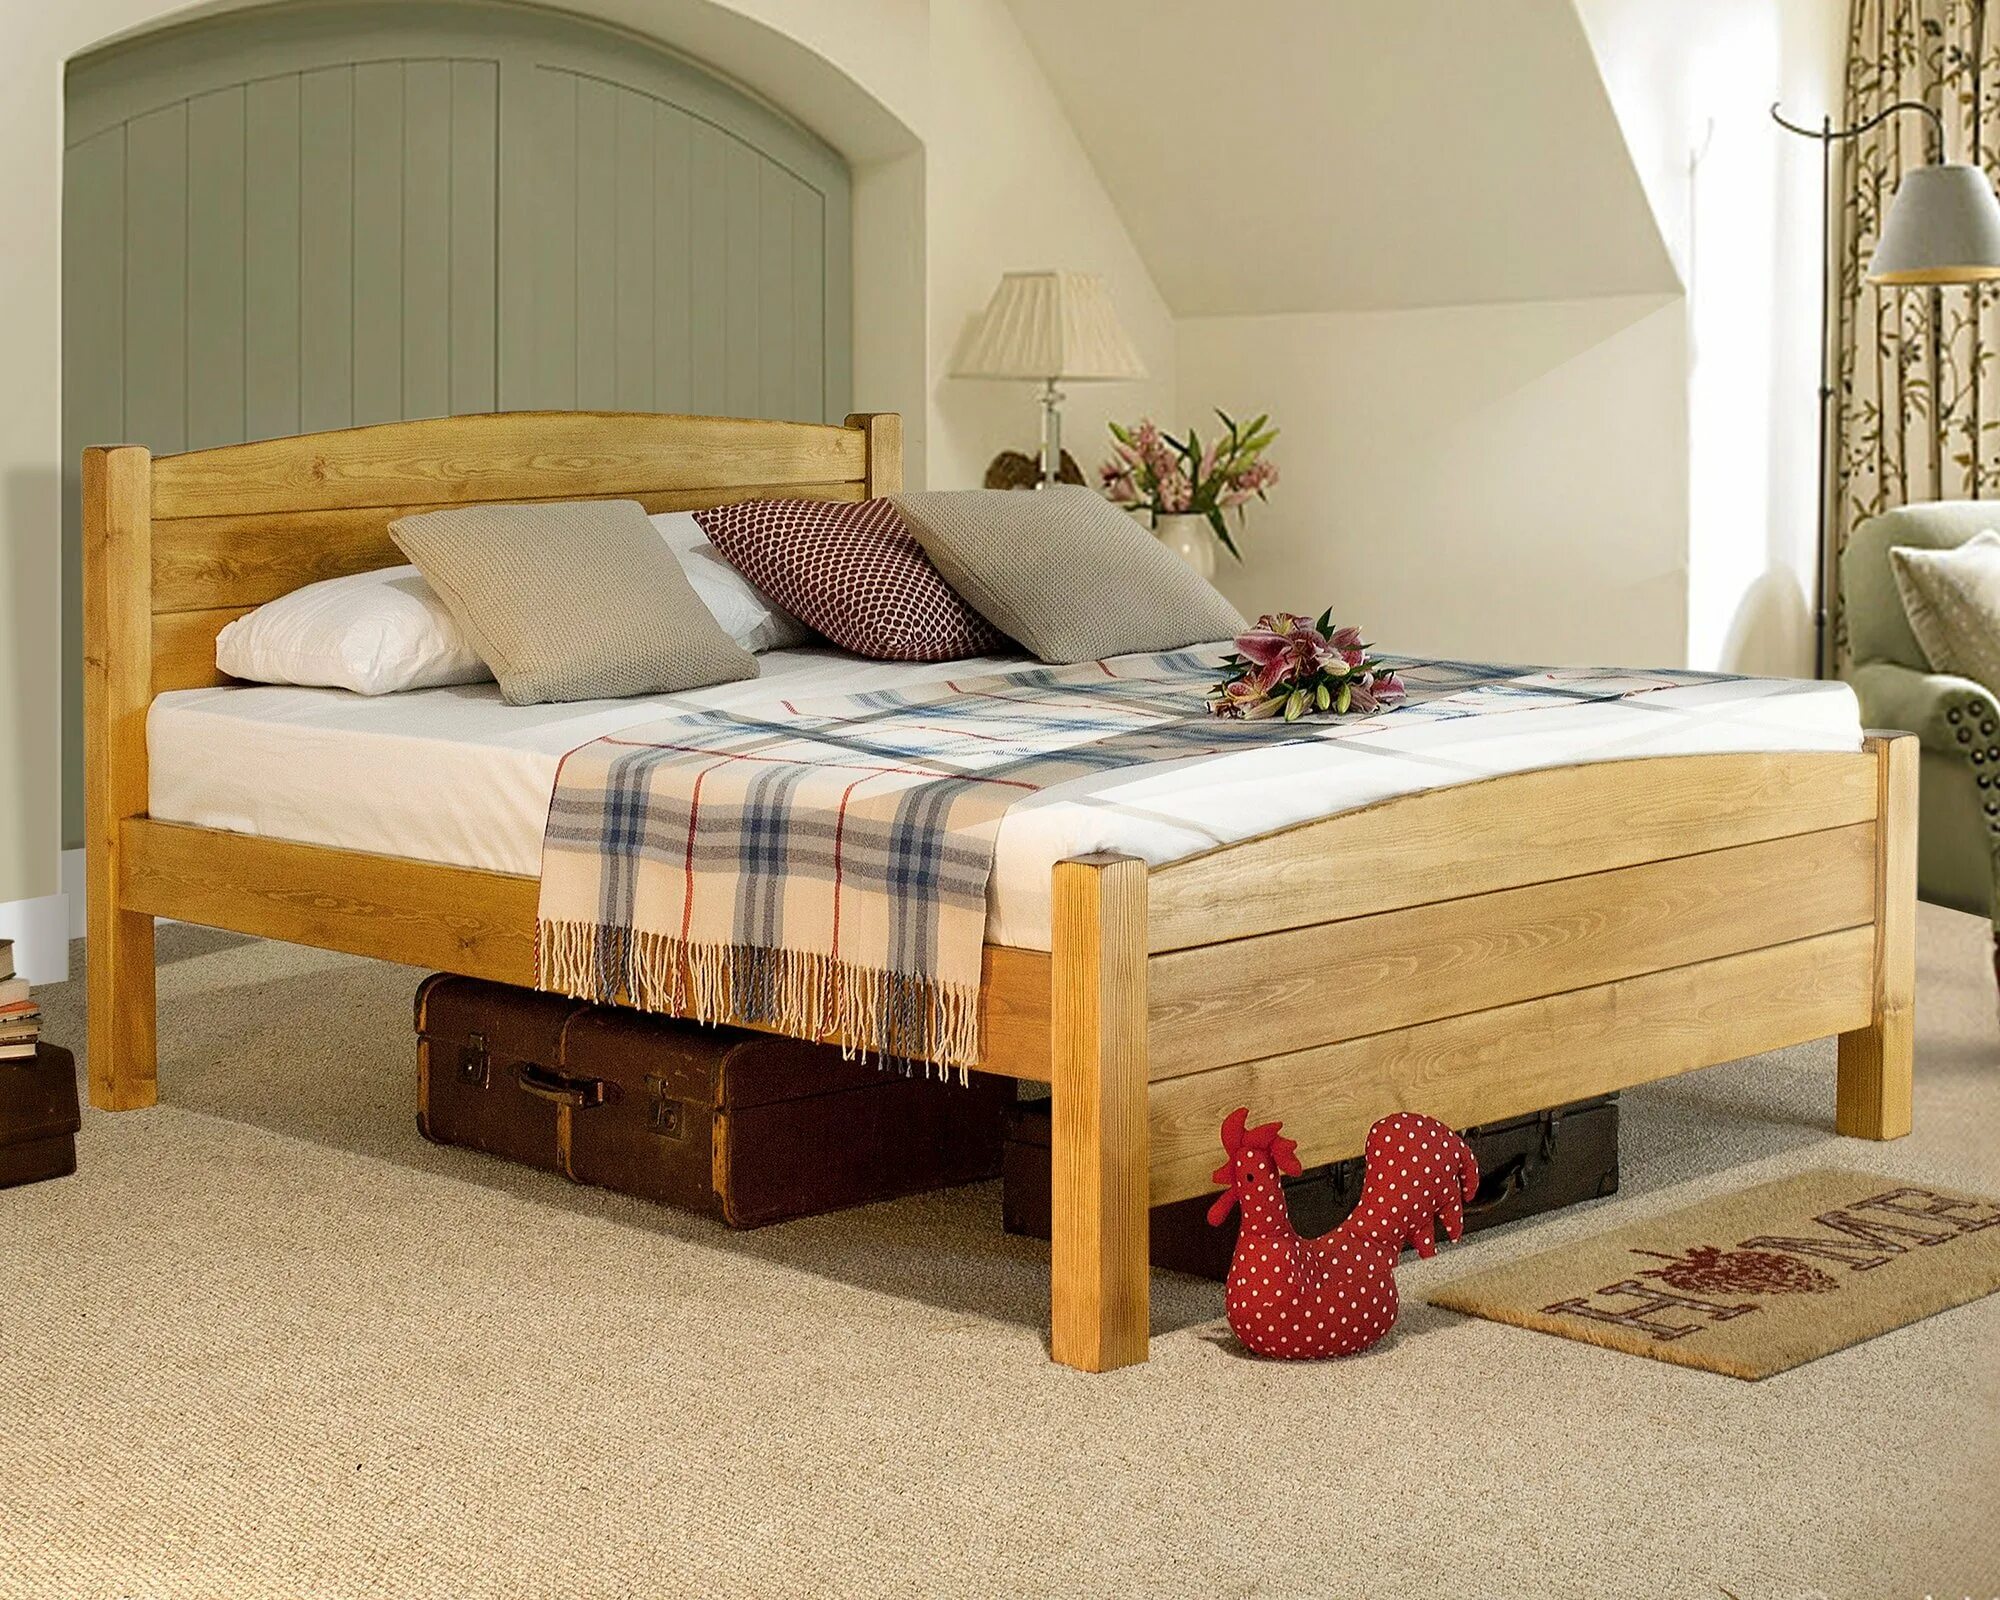 Двуспальная кровать дома дом. Кровать подростковая «Wooden Bed-2». Деревянная кровать икеа Кантри. Кровать «Дачная 2» каприз. Кровать двуспальная массив Кантри.